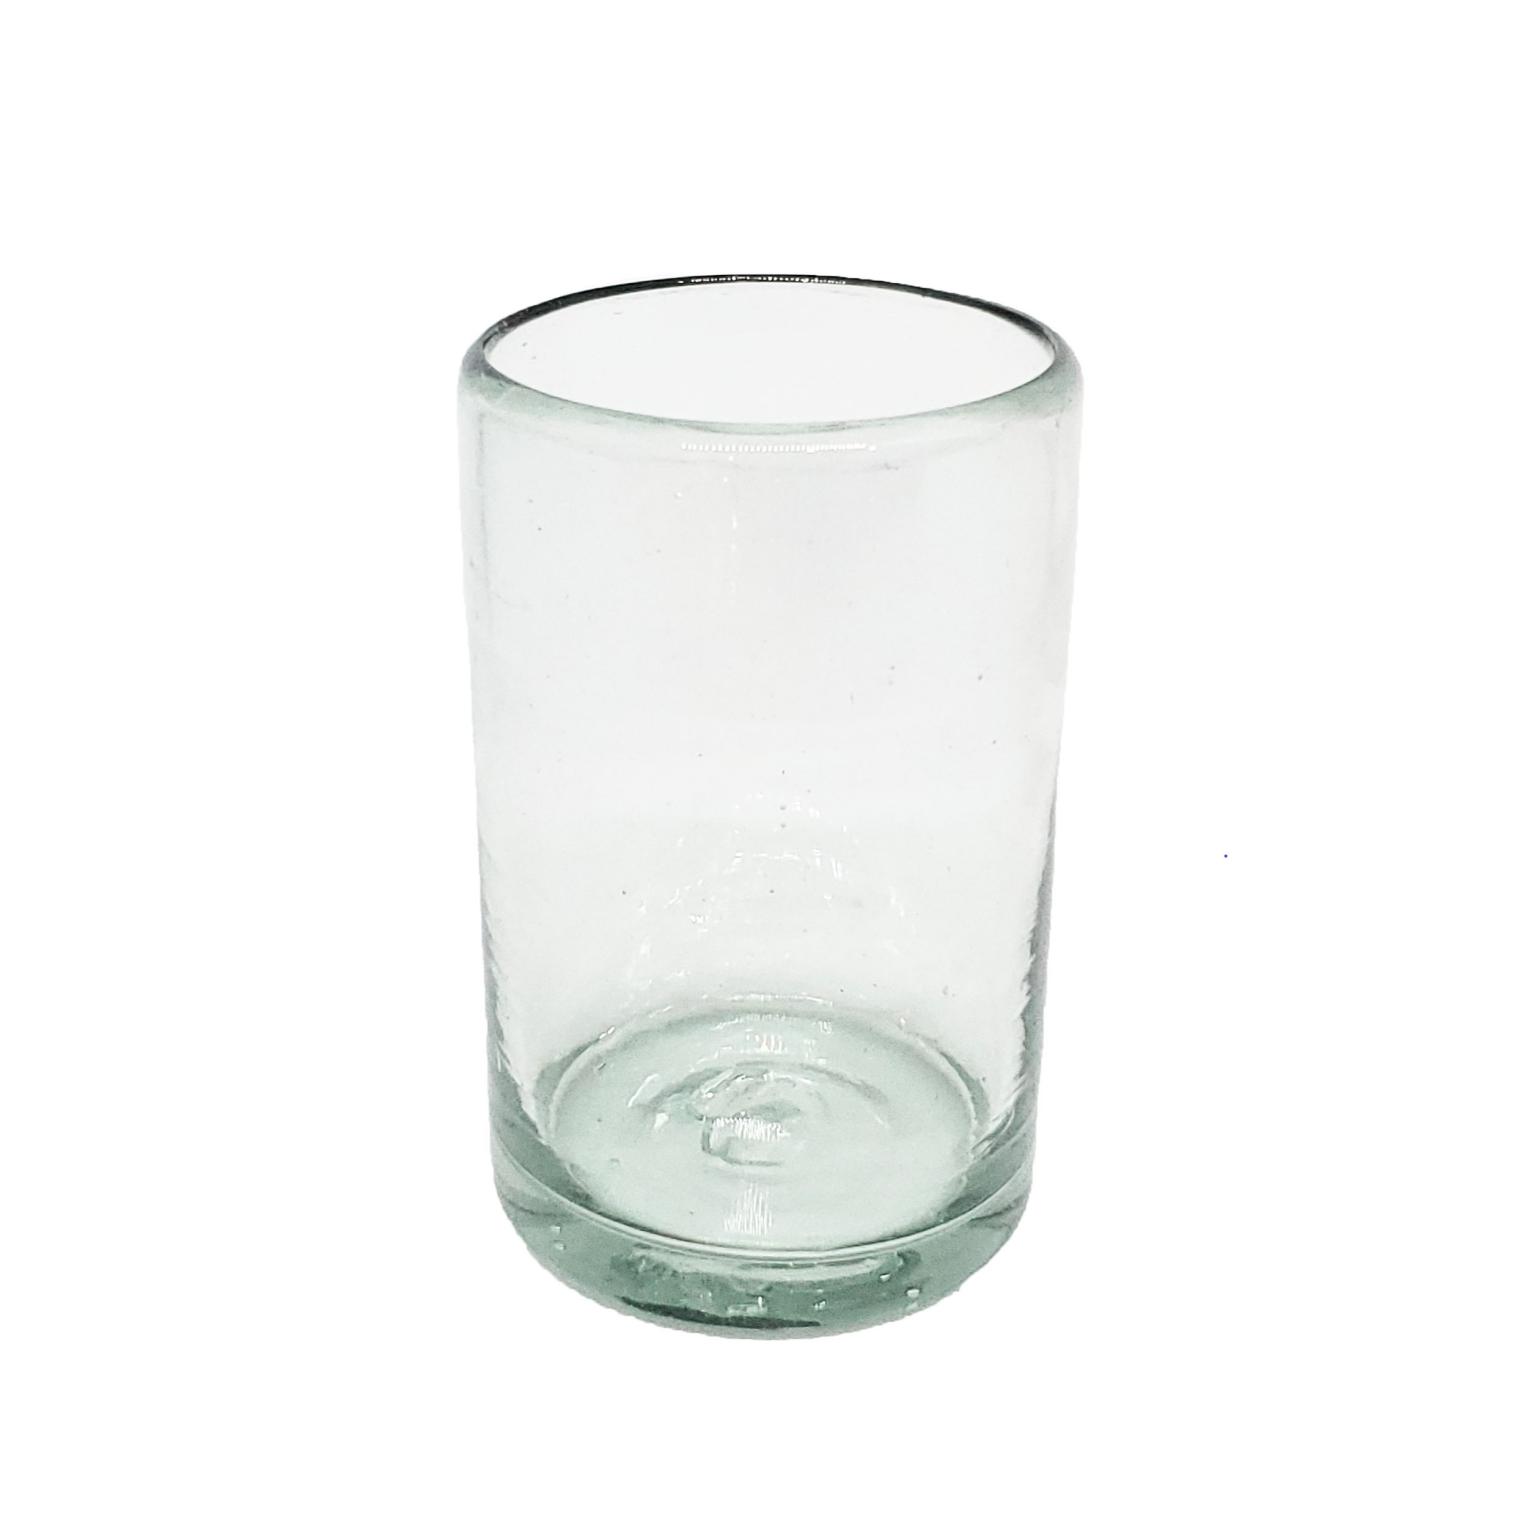 VIDRIO SOPLADO al Mayoreo / vasos Jugo 9oz Transparentes / Éstos artesanales vasos le darán un toque clásico a su bebida favorita.